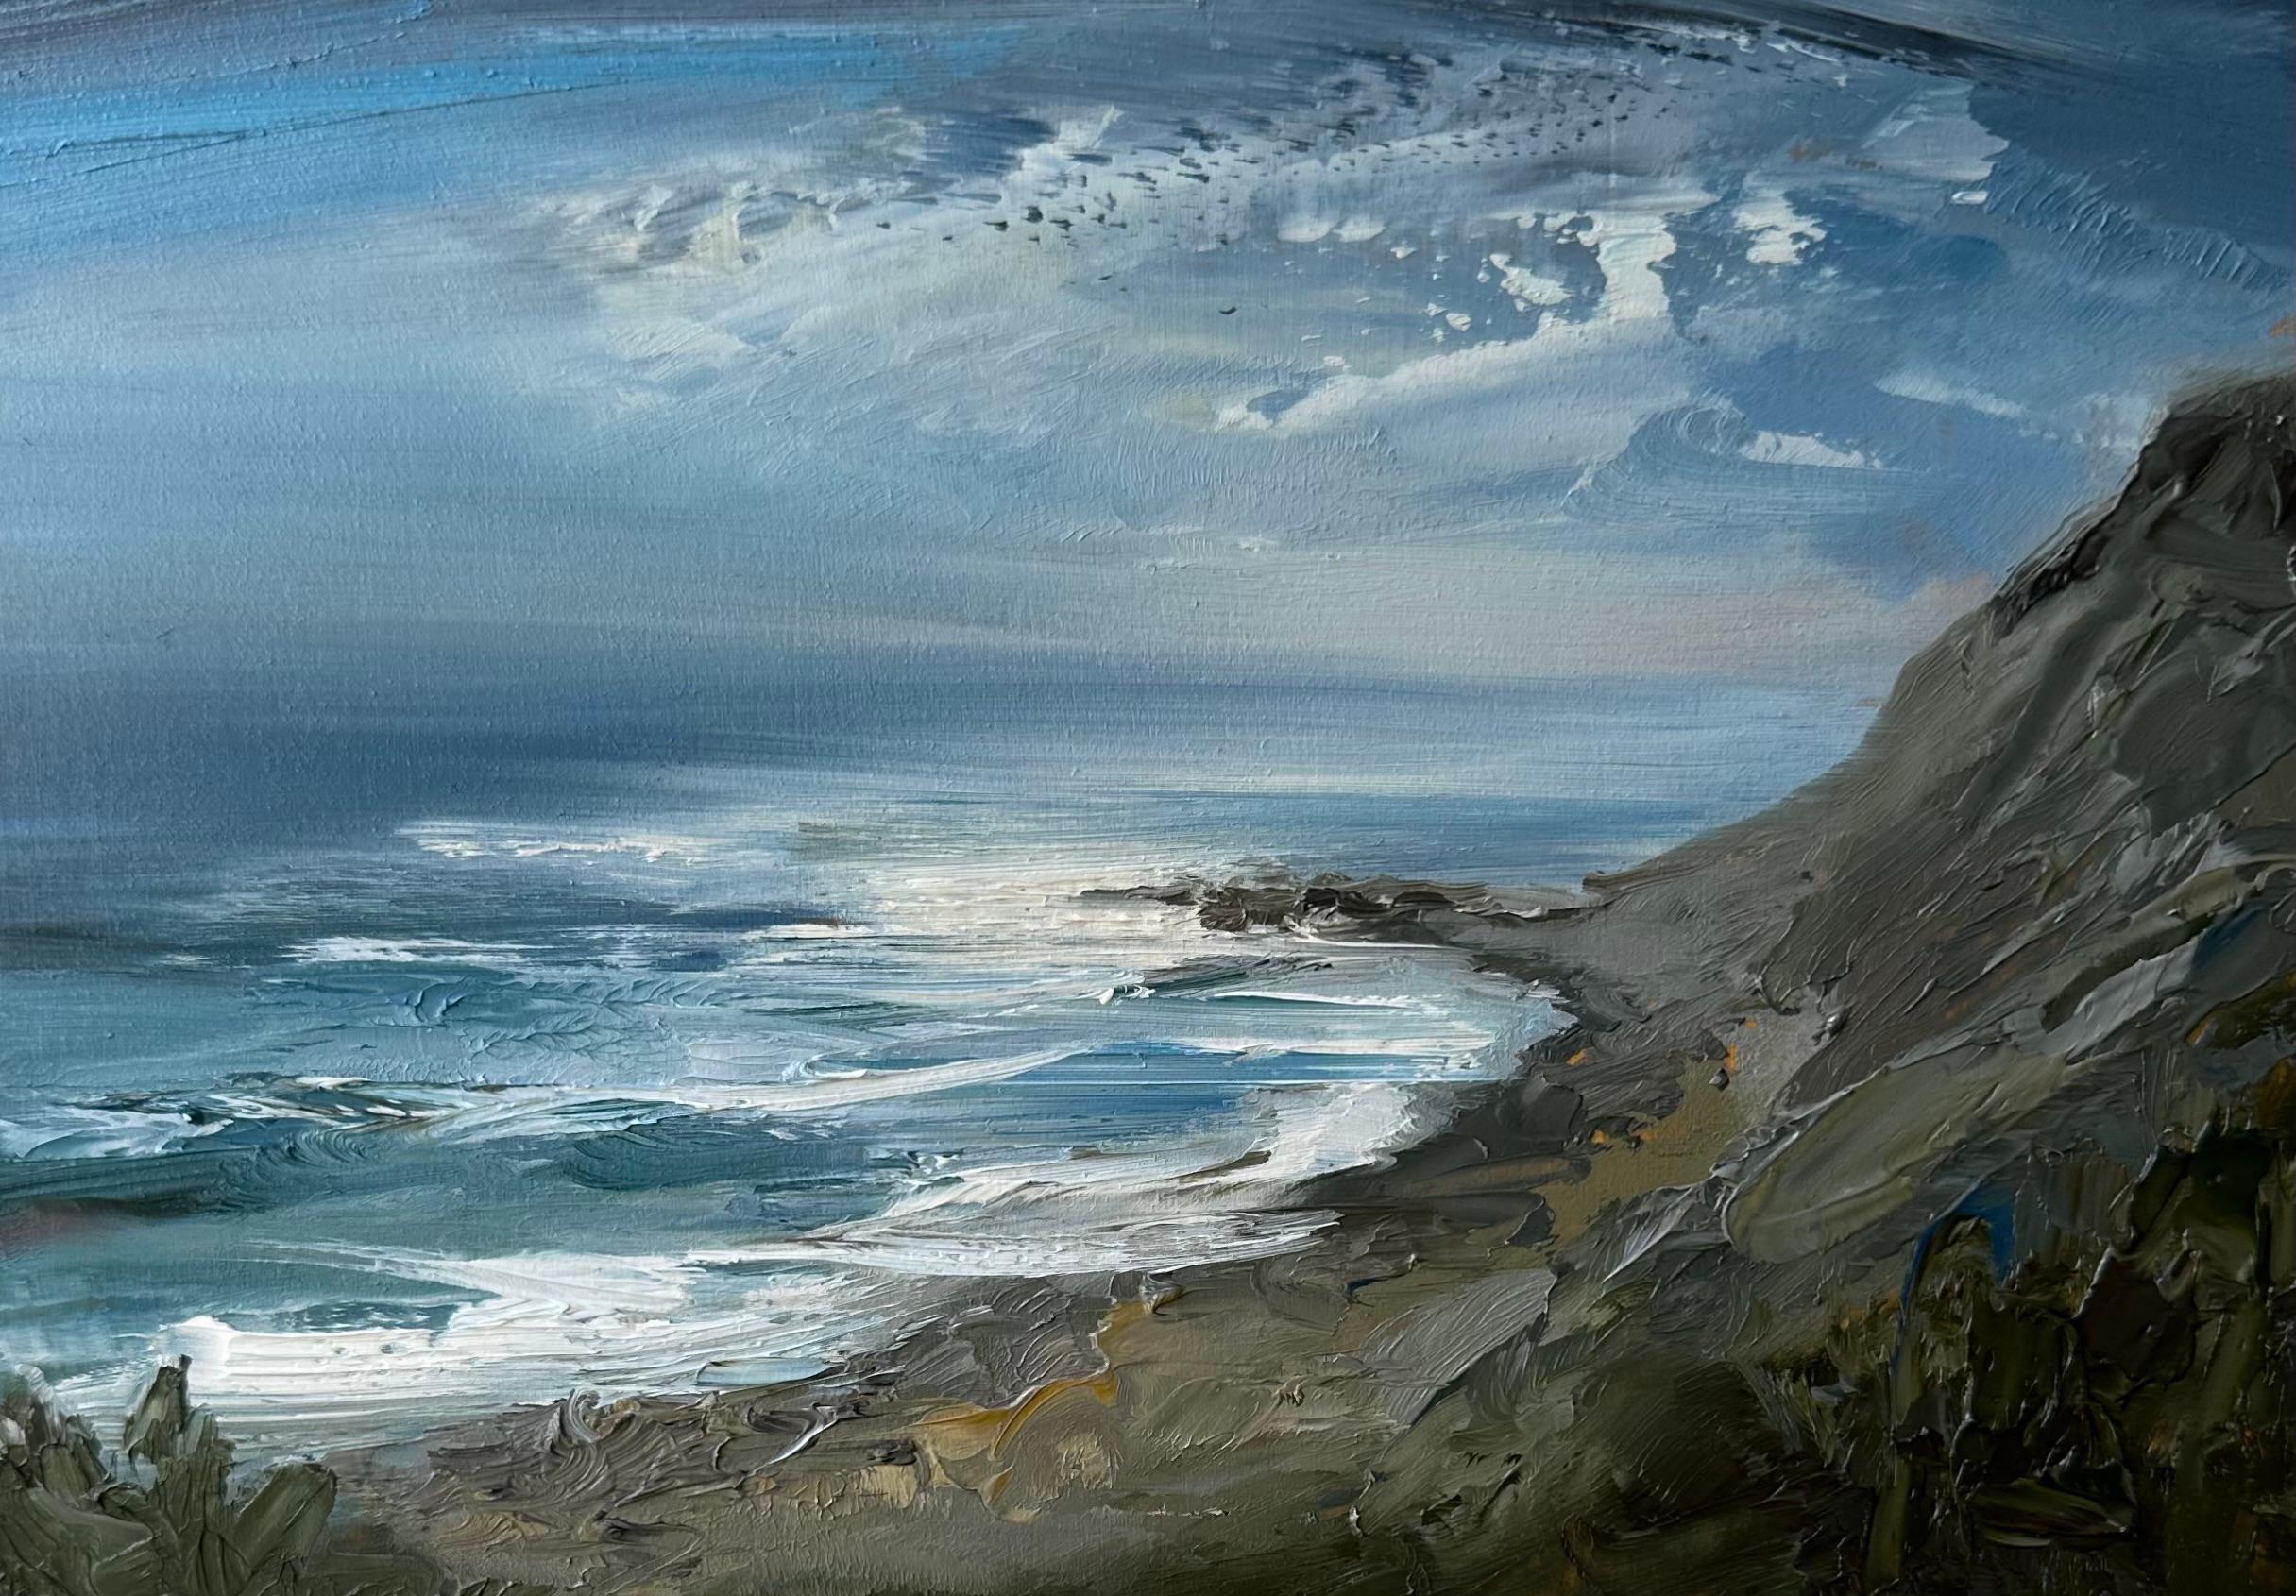 Landscape Painting Whitney Knapp - "Moonlit Bluff", une peinture à l'huile de paysage avec une vue pittoresque du rivage.